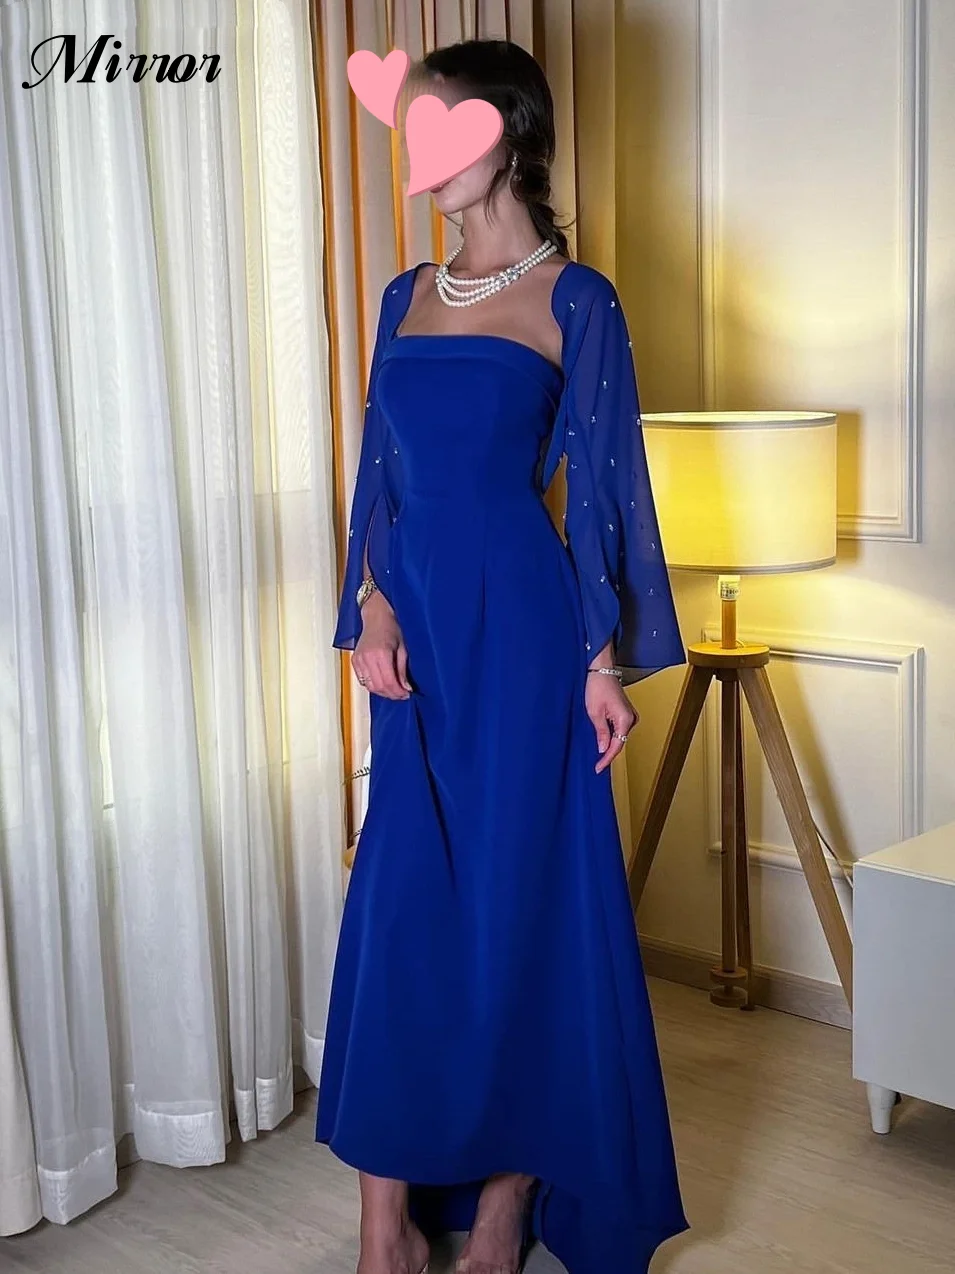 Зеркальное платье, Элегантное Винтажное платье с квадратным воротником, расшитое синими блестками, сшитое по индивидуальному заказу для торжественного случая, платье для выпускного вечера, вечерние платья для вечеринок